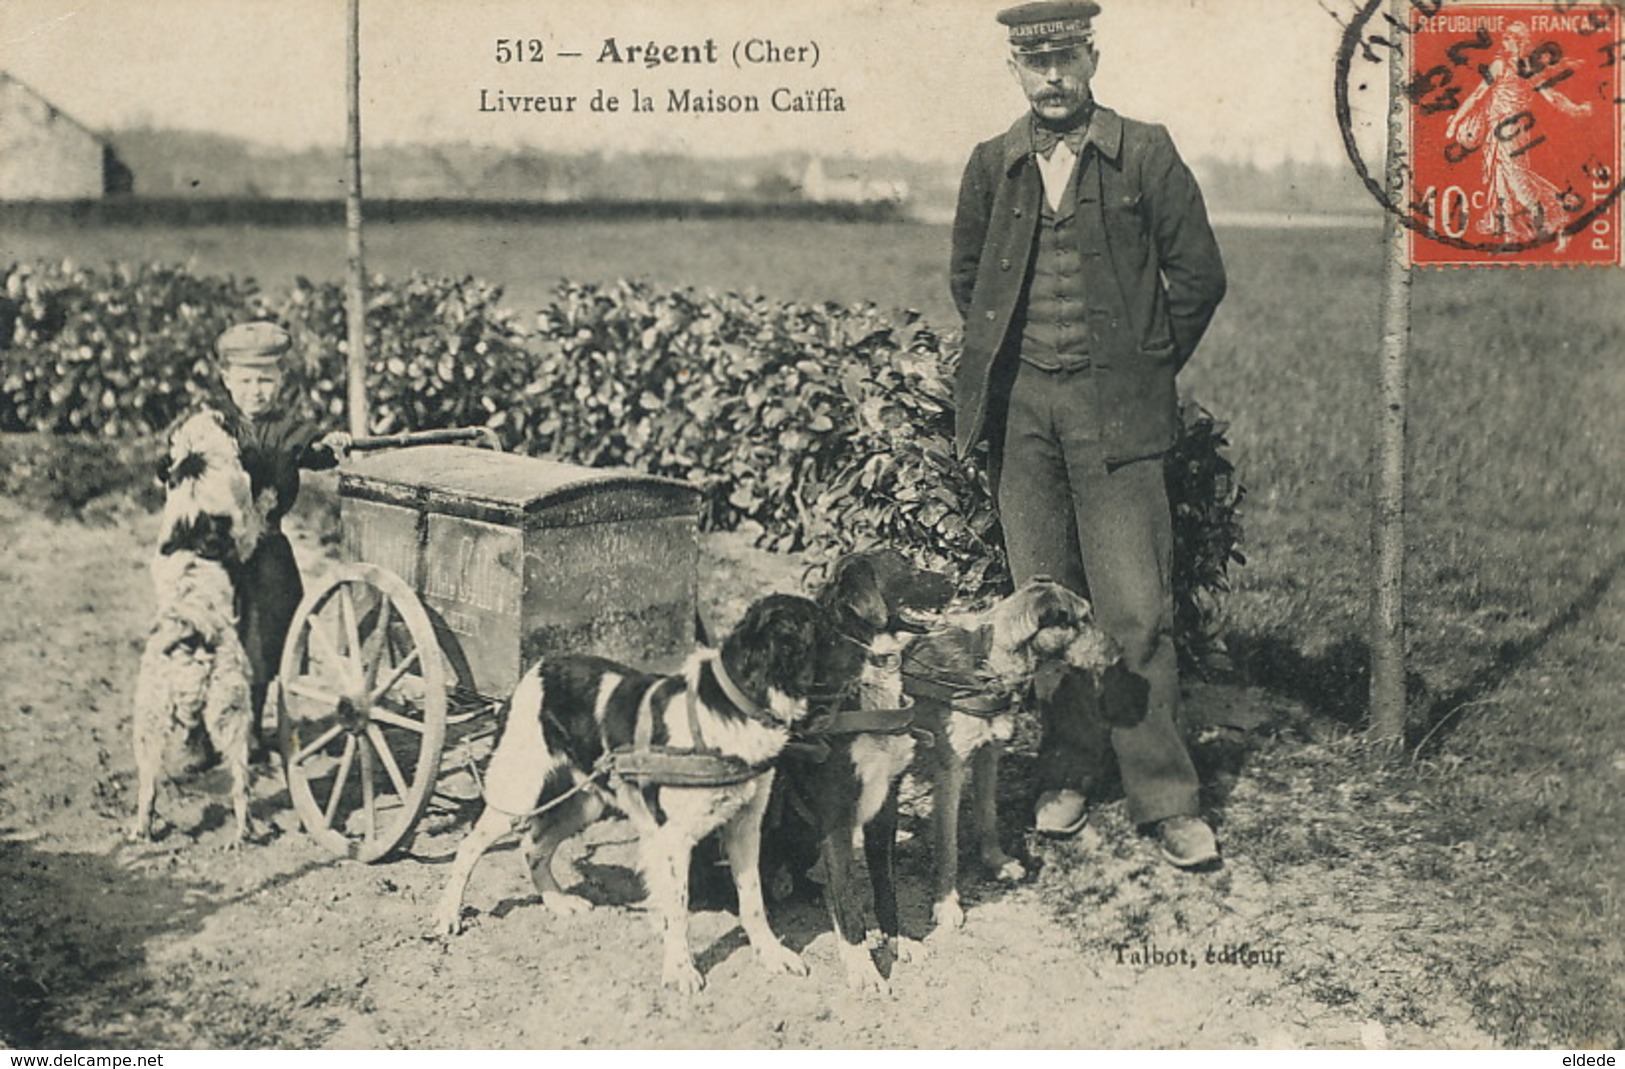 Argent Sur Sauldre Livreur ( Name Chocat ) Maison Planteur De Caiffa Michel Cahen. Attelage 3 Chiens. Dog Cart.Talbot - Giudaismo